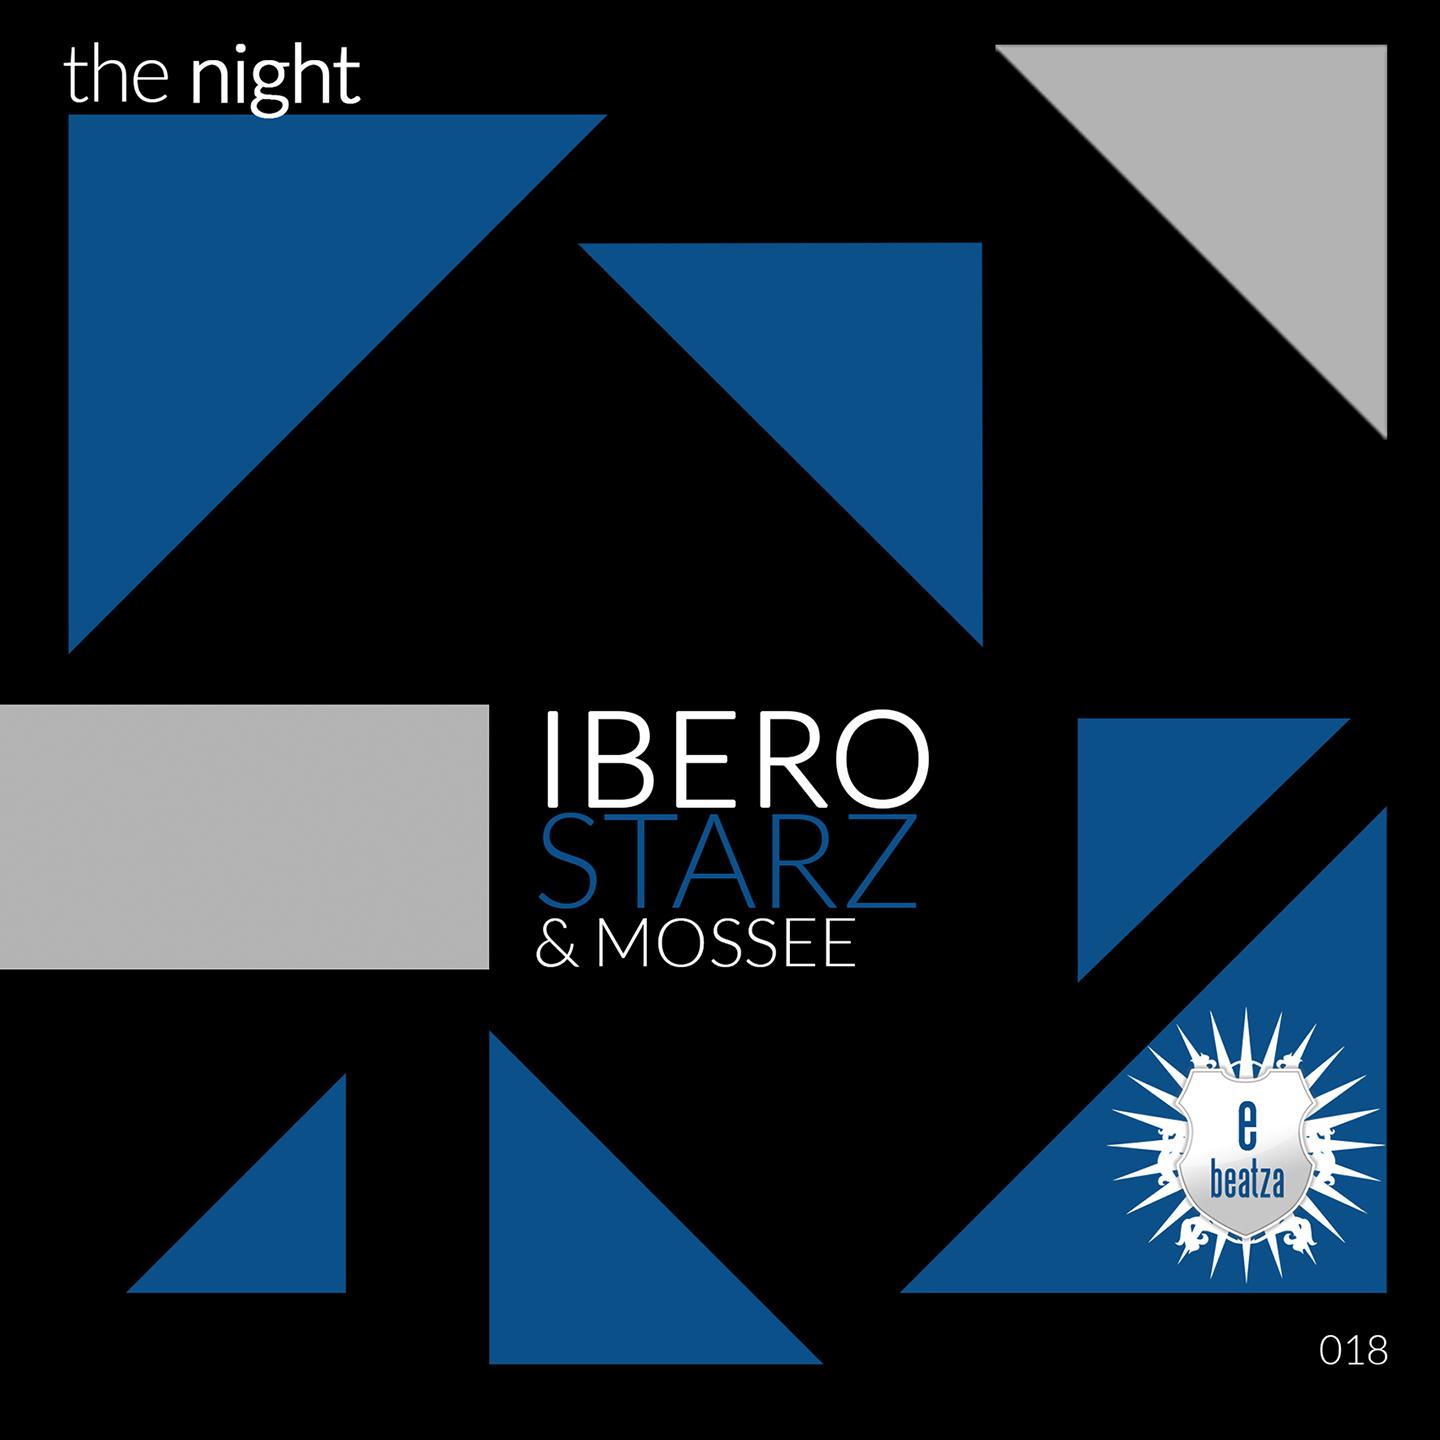 The Night (Radio Edit)